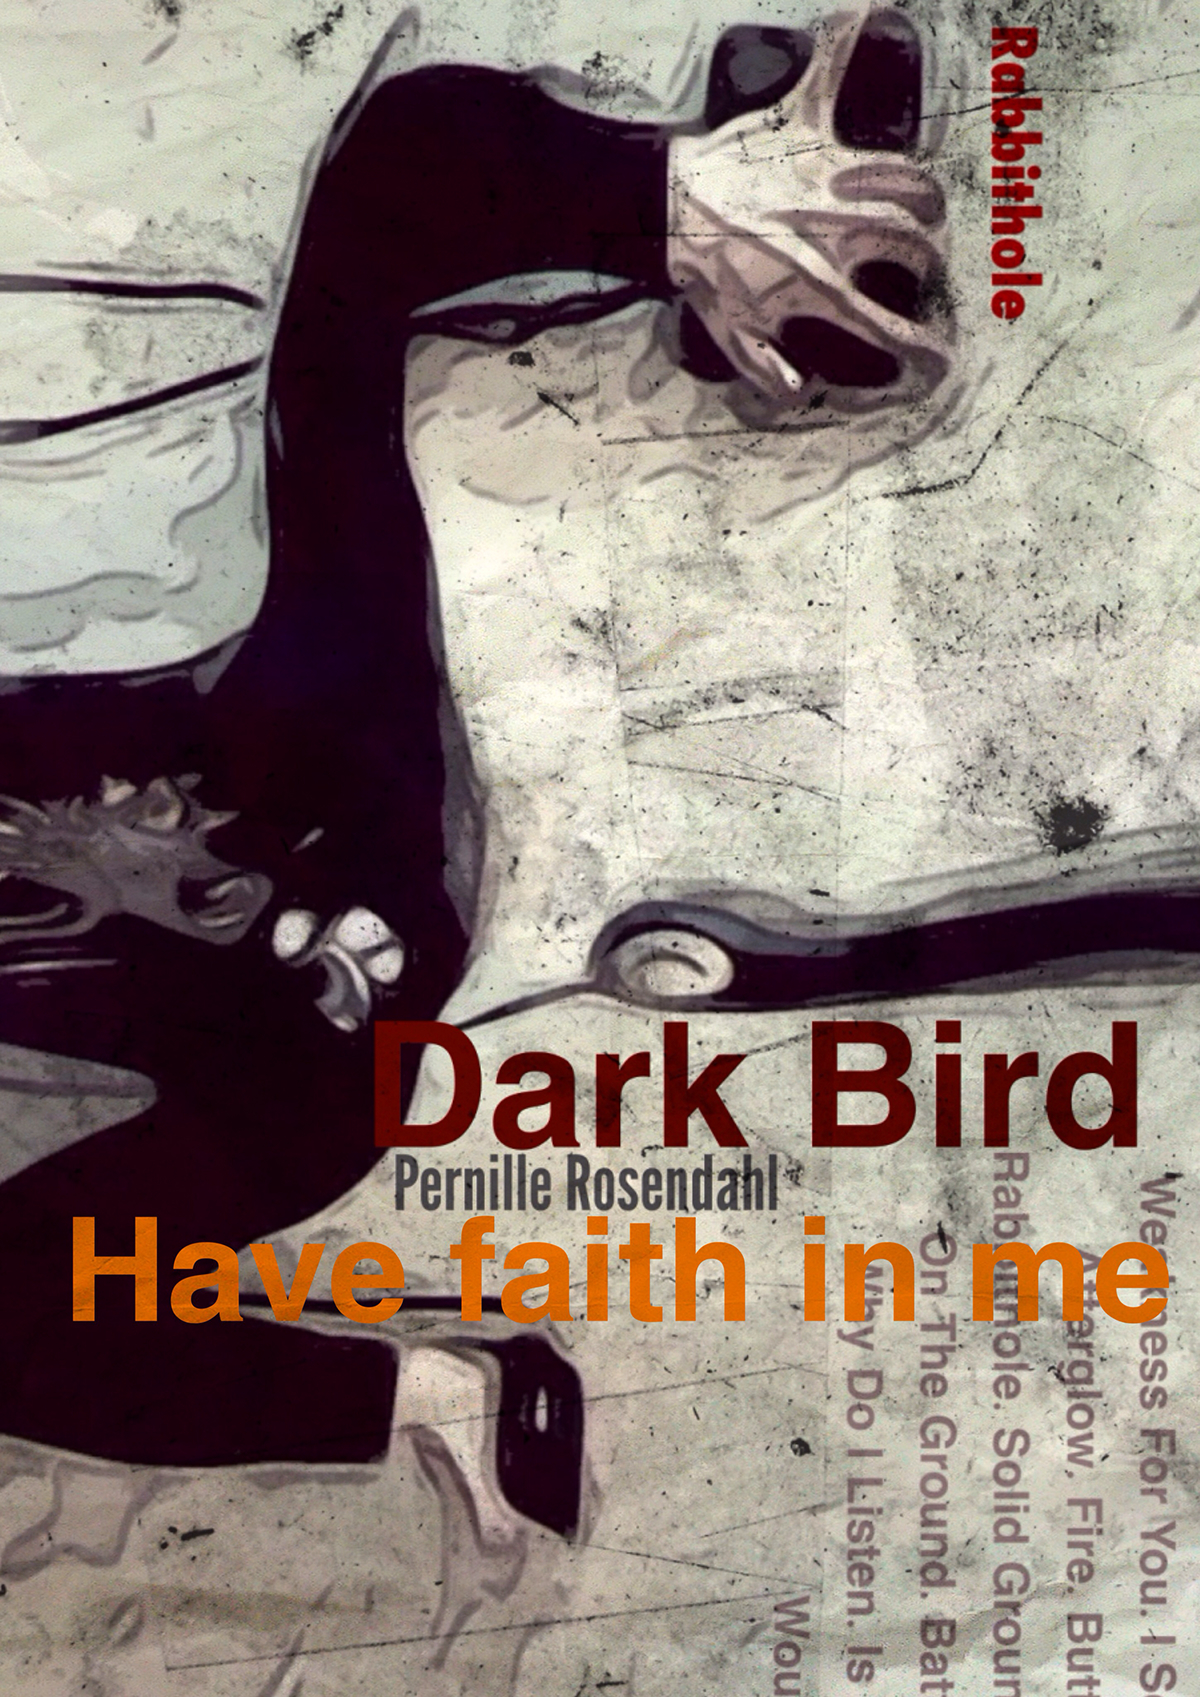 dark bird music Pernille Rosendal Album ILLUSTRATION 